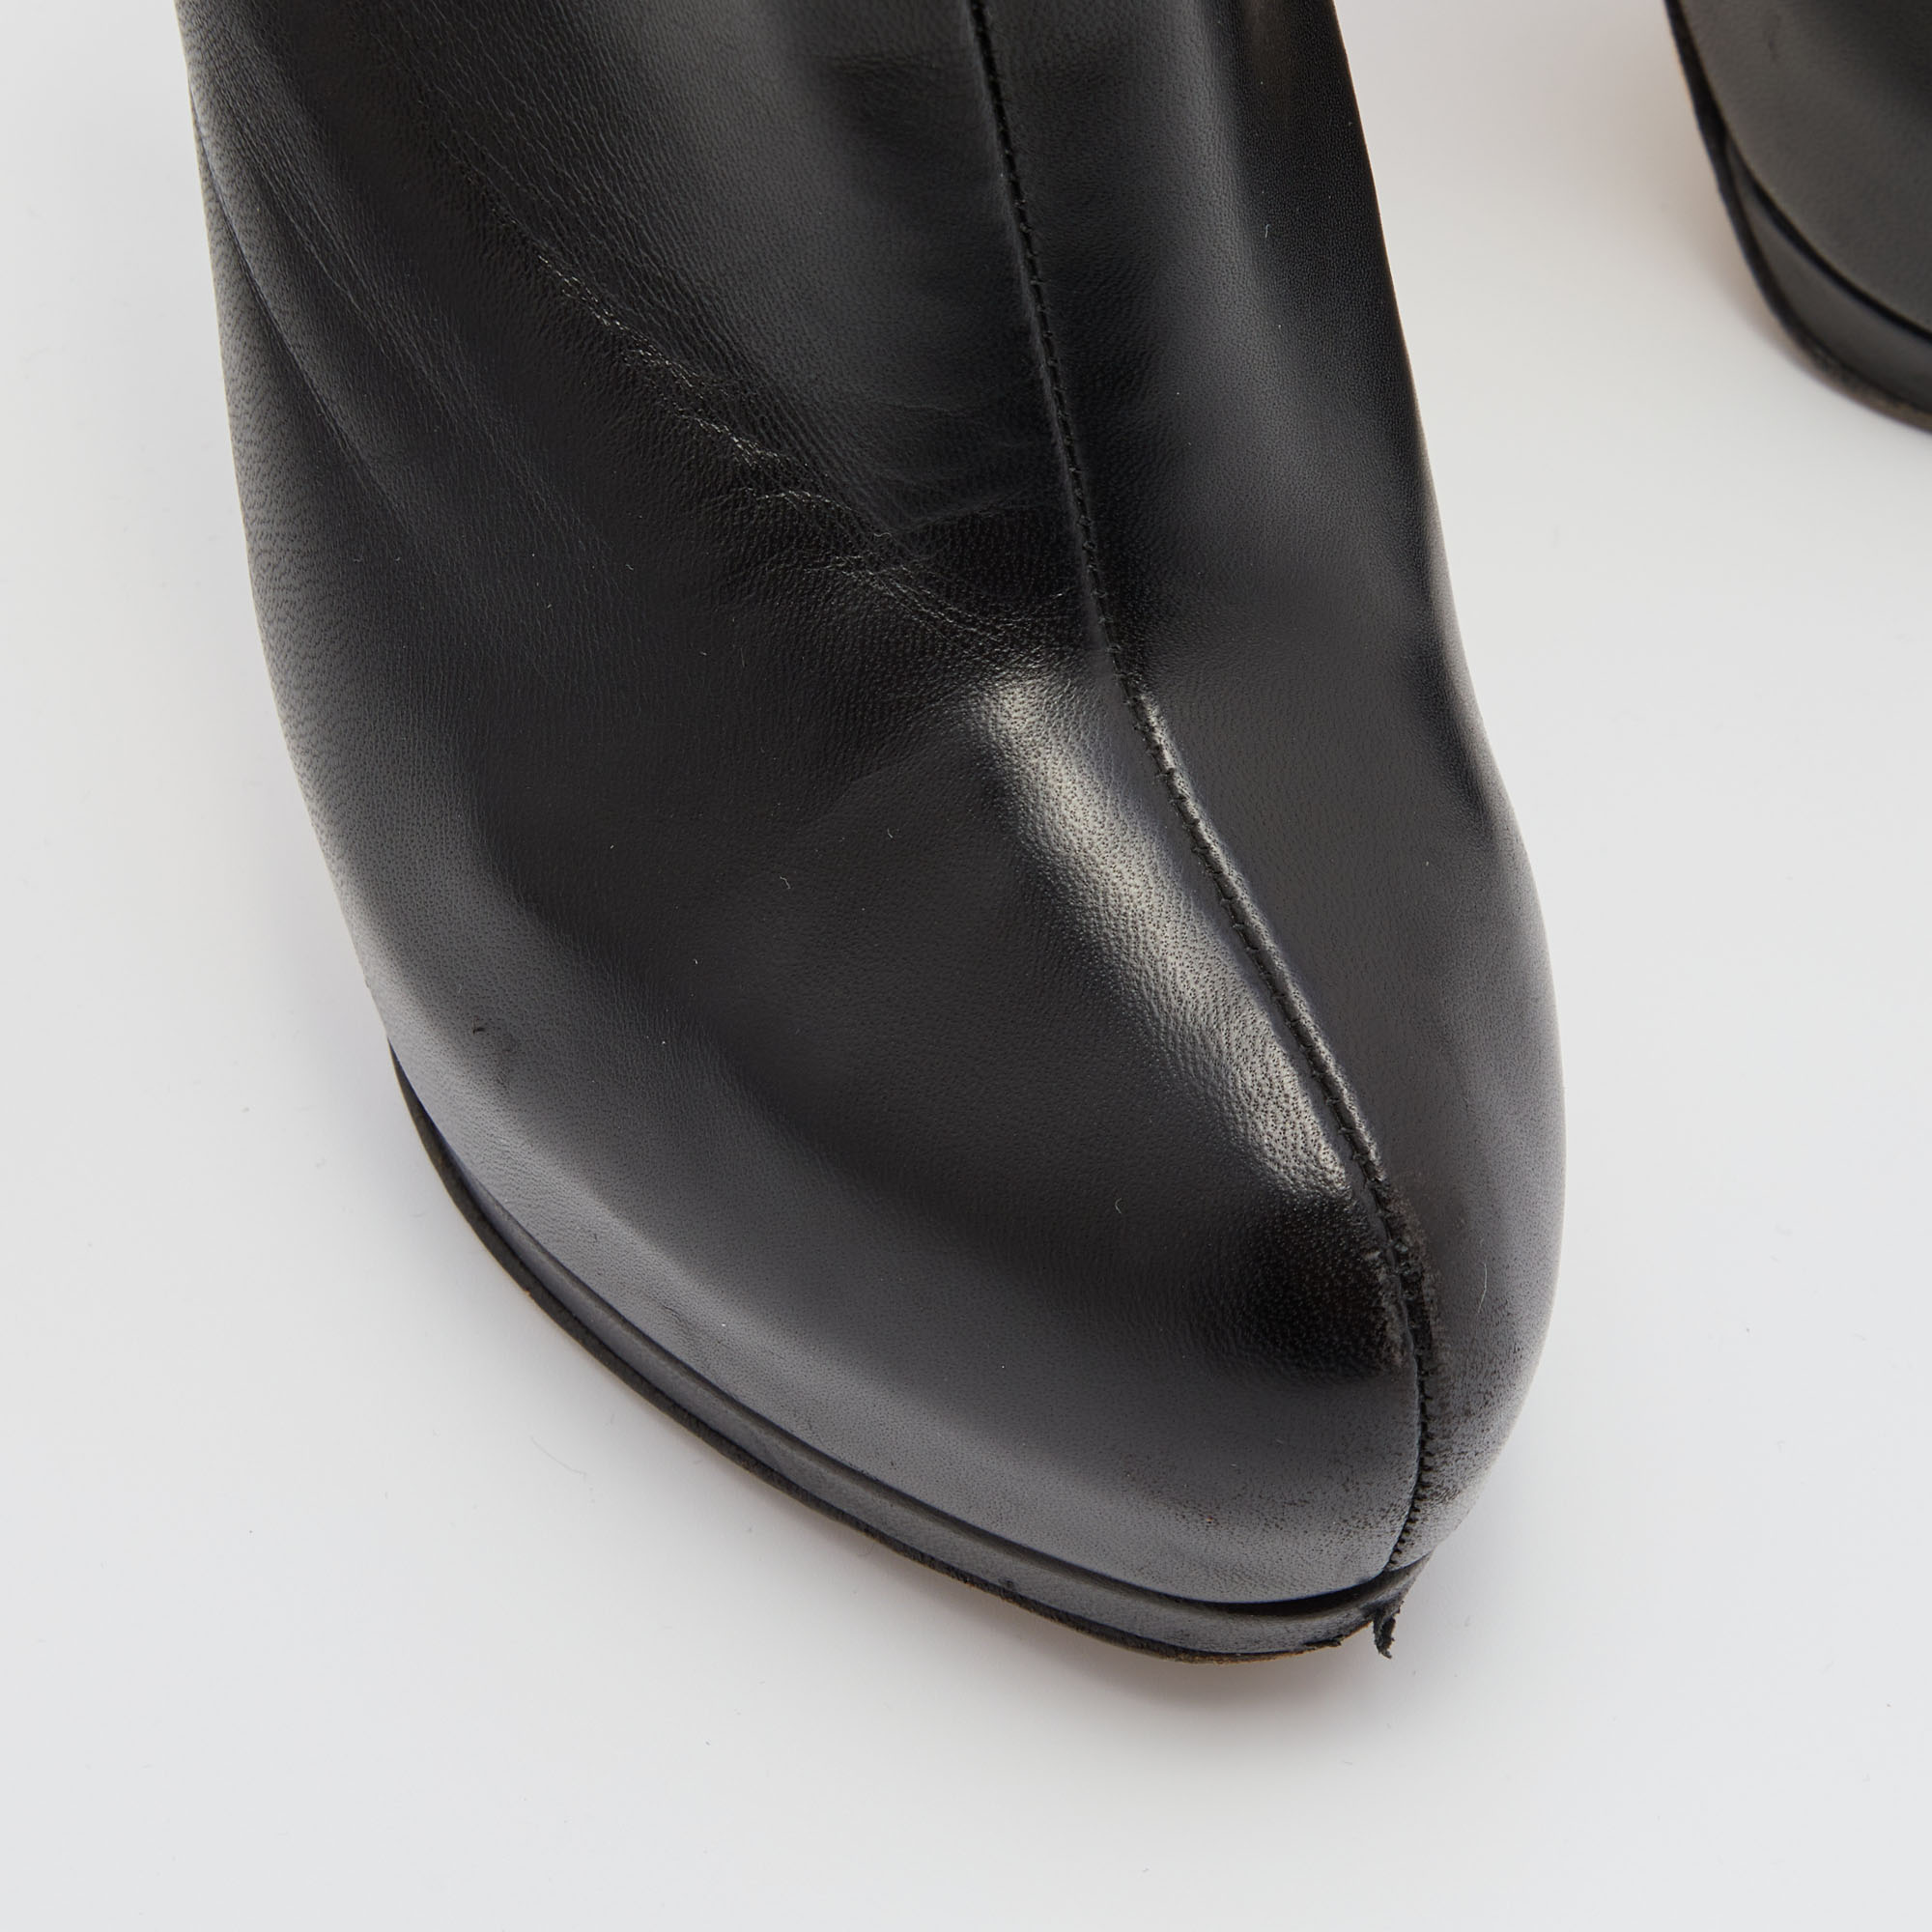 Giuseppe Zanotti Black Leather Ankle Length Platform Boots Size 38